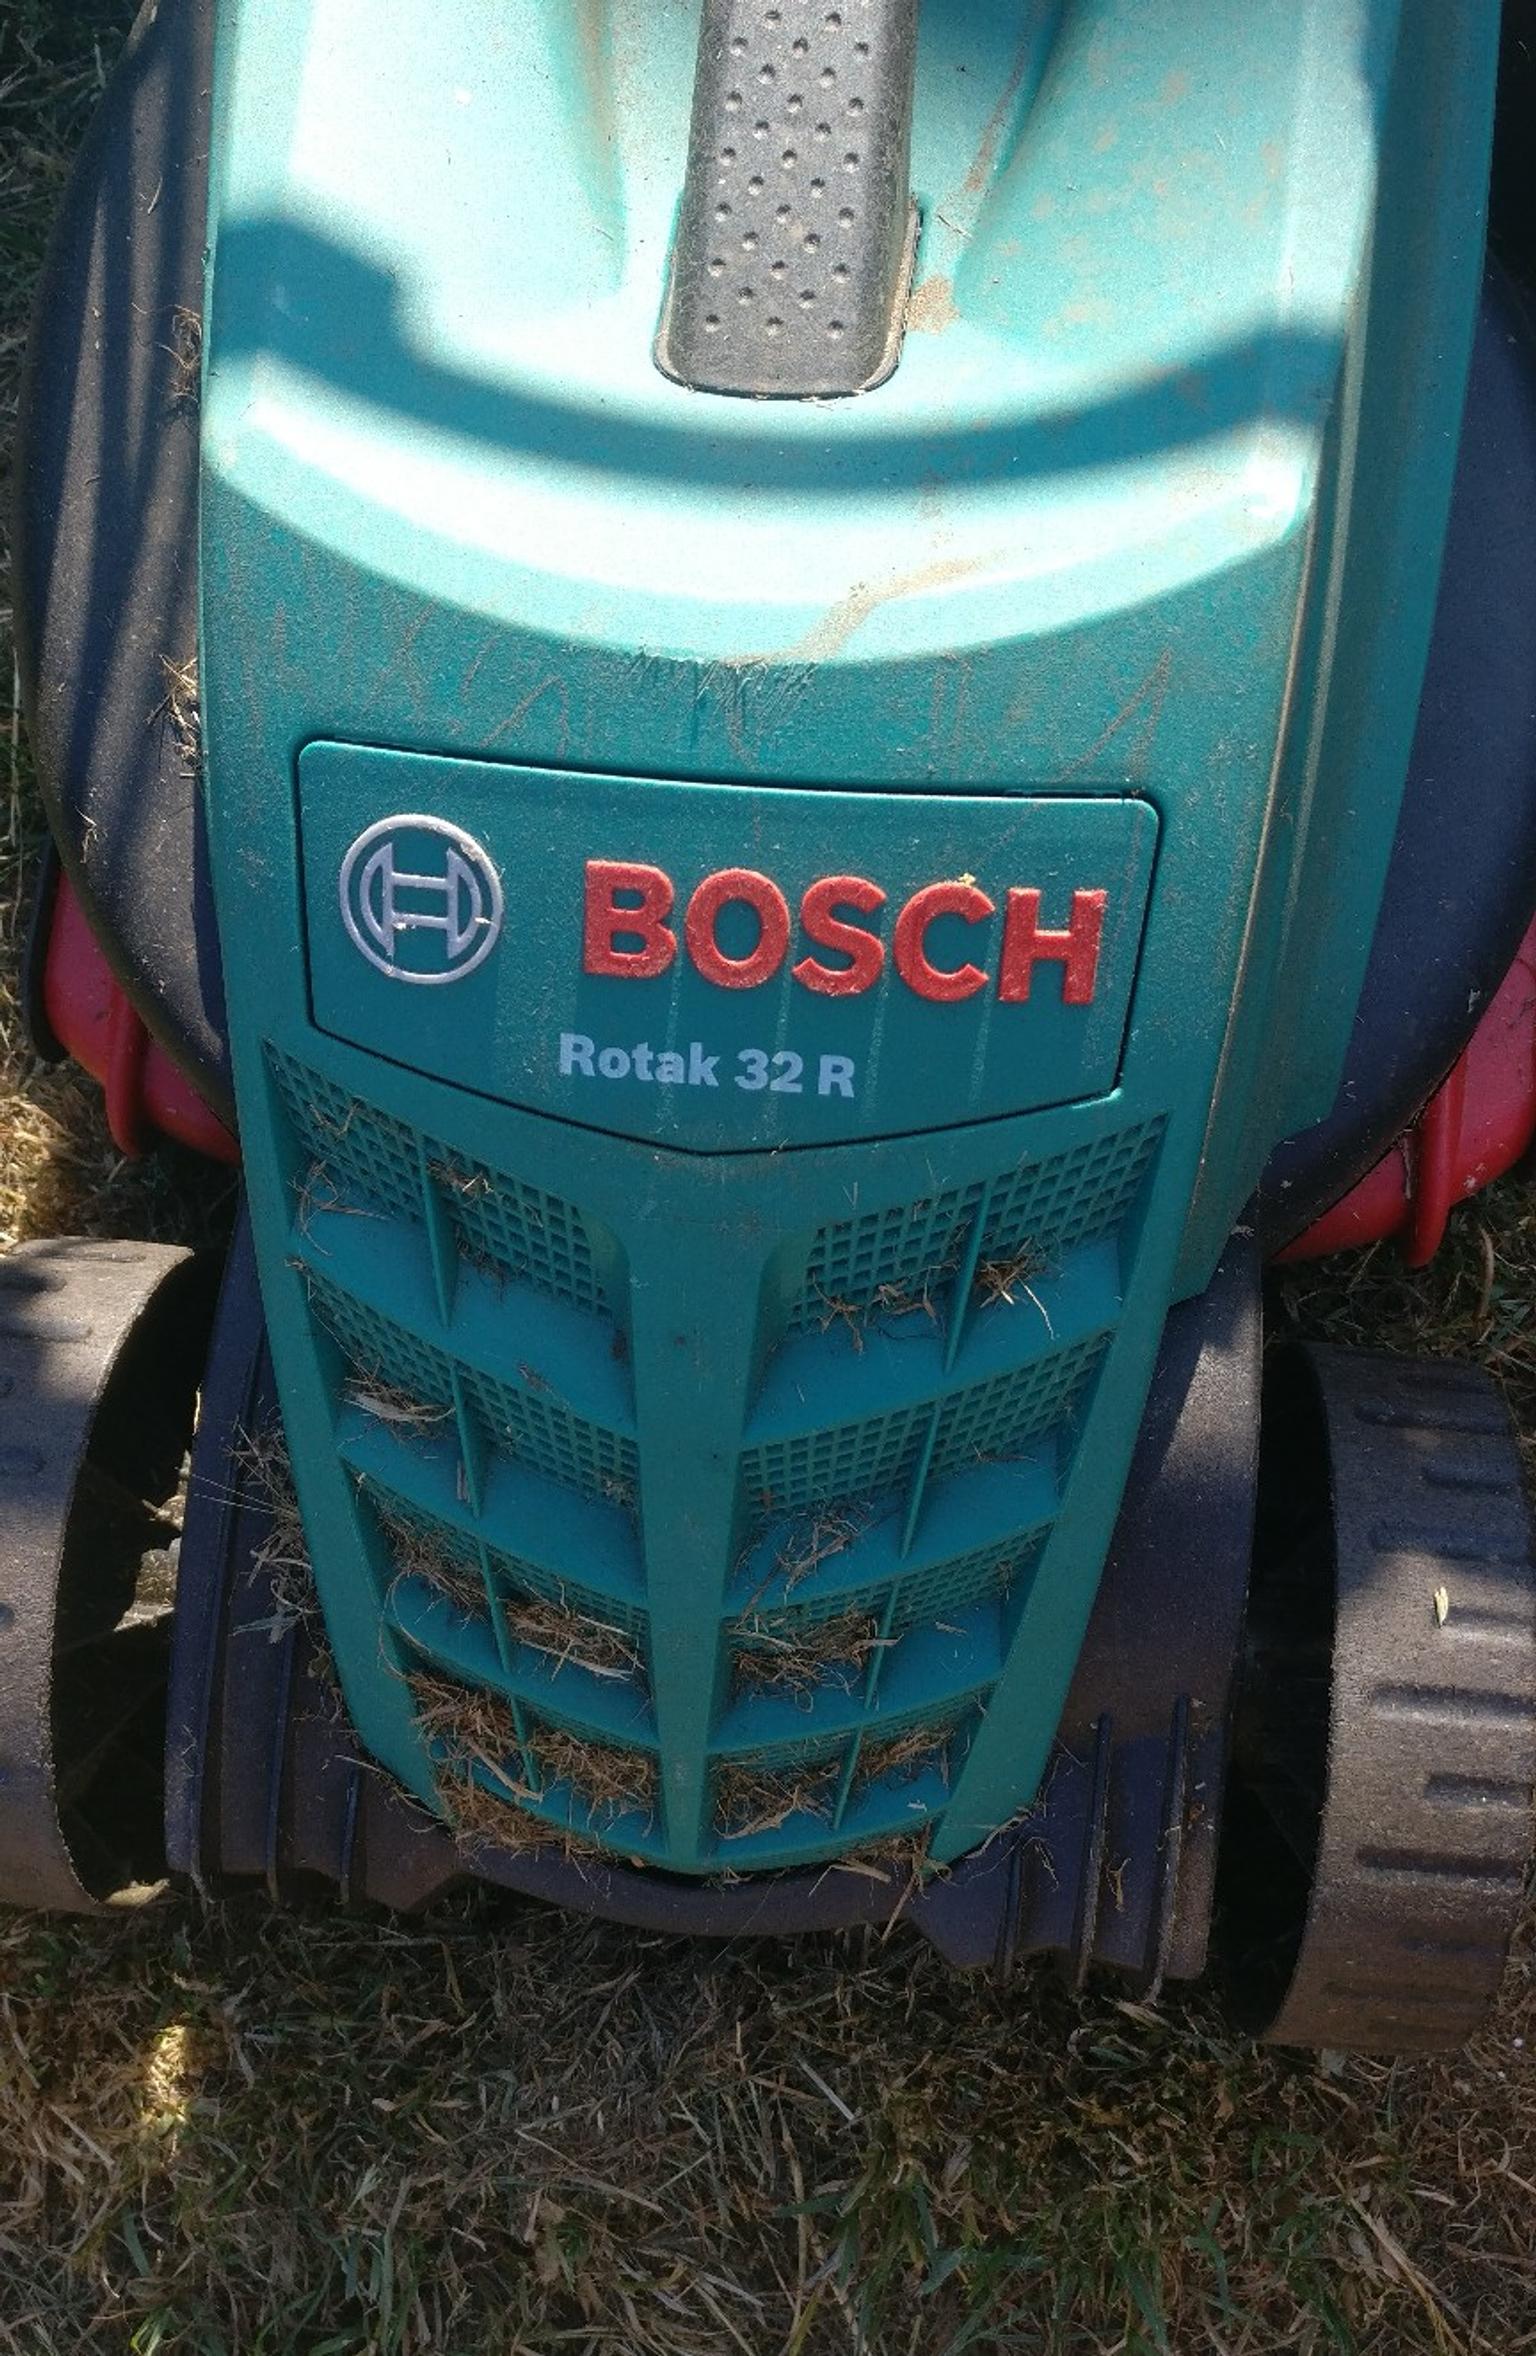 Bosch Rotak 32r Lawnmower Spares Or Repair In Peterborough For